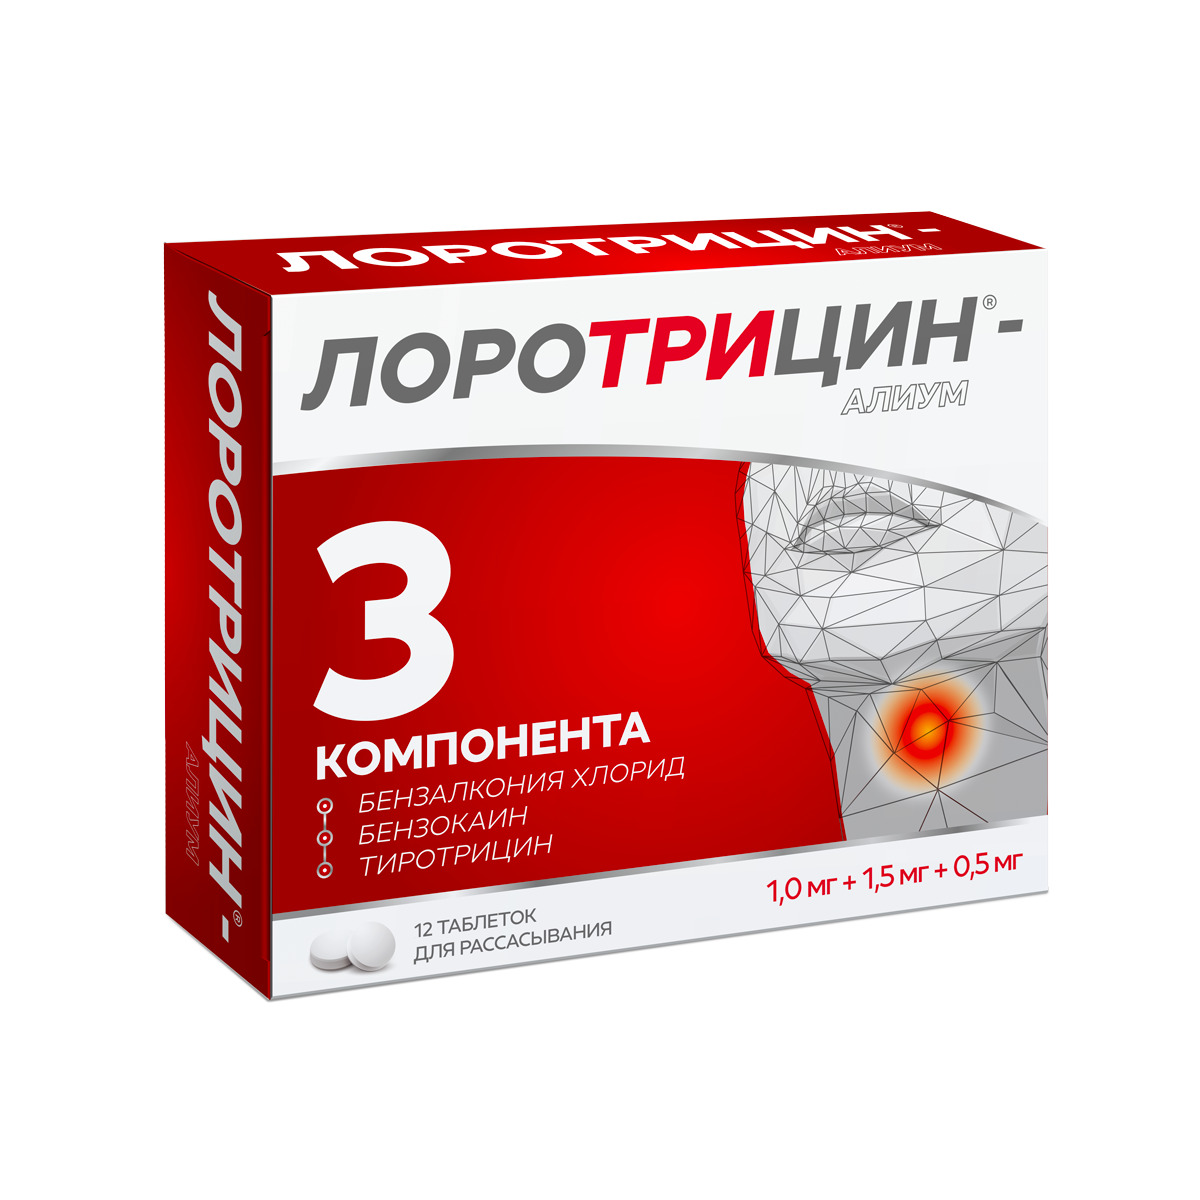 Лоротрицин-Алиум таб. д рассасыв. 1мг+1,5мг+0,5мг №12